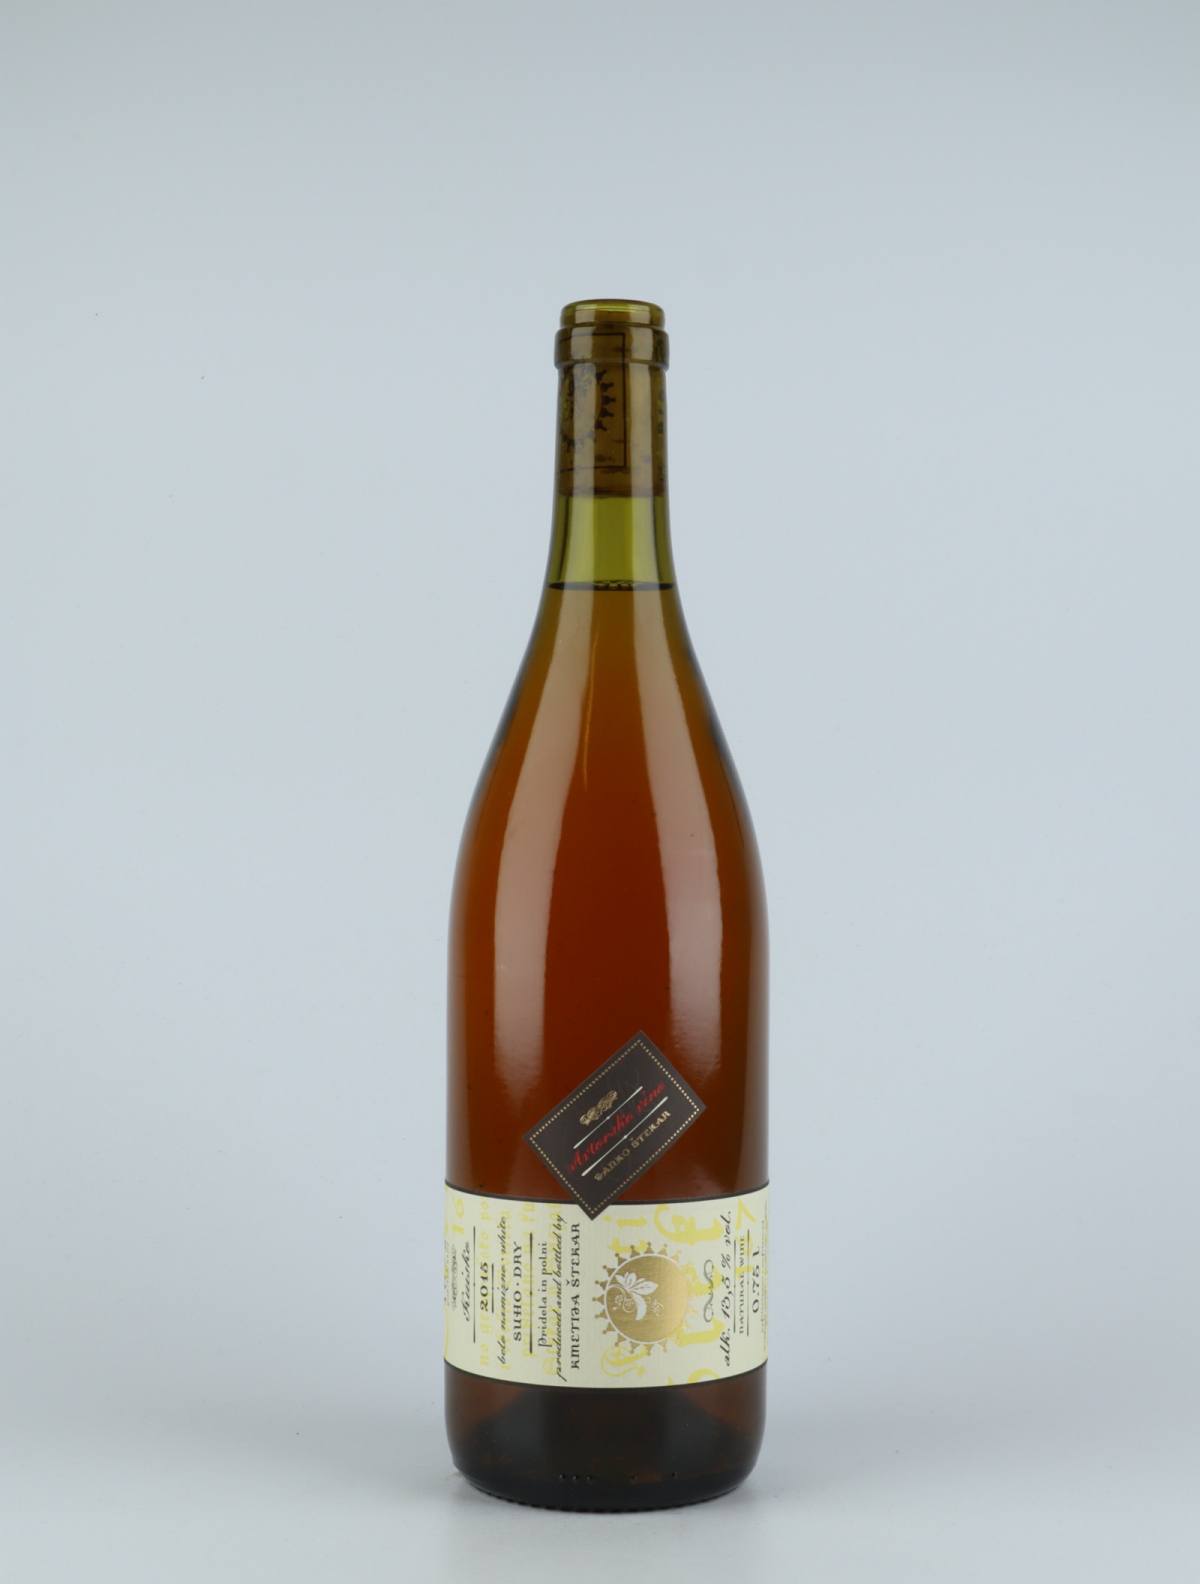 A bottle 2015 Kuisko Orange wine from Kmetija Stekar, Brda in Slovenia